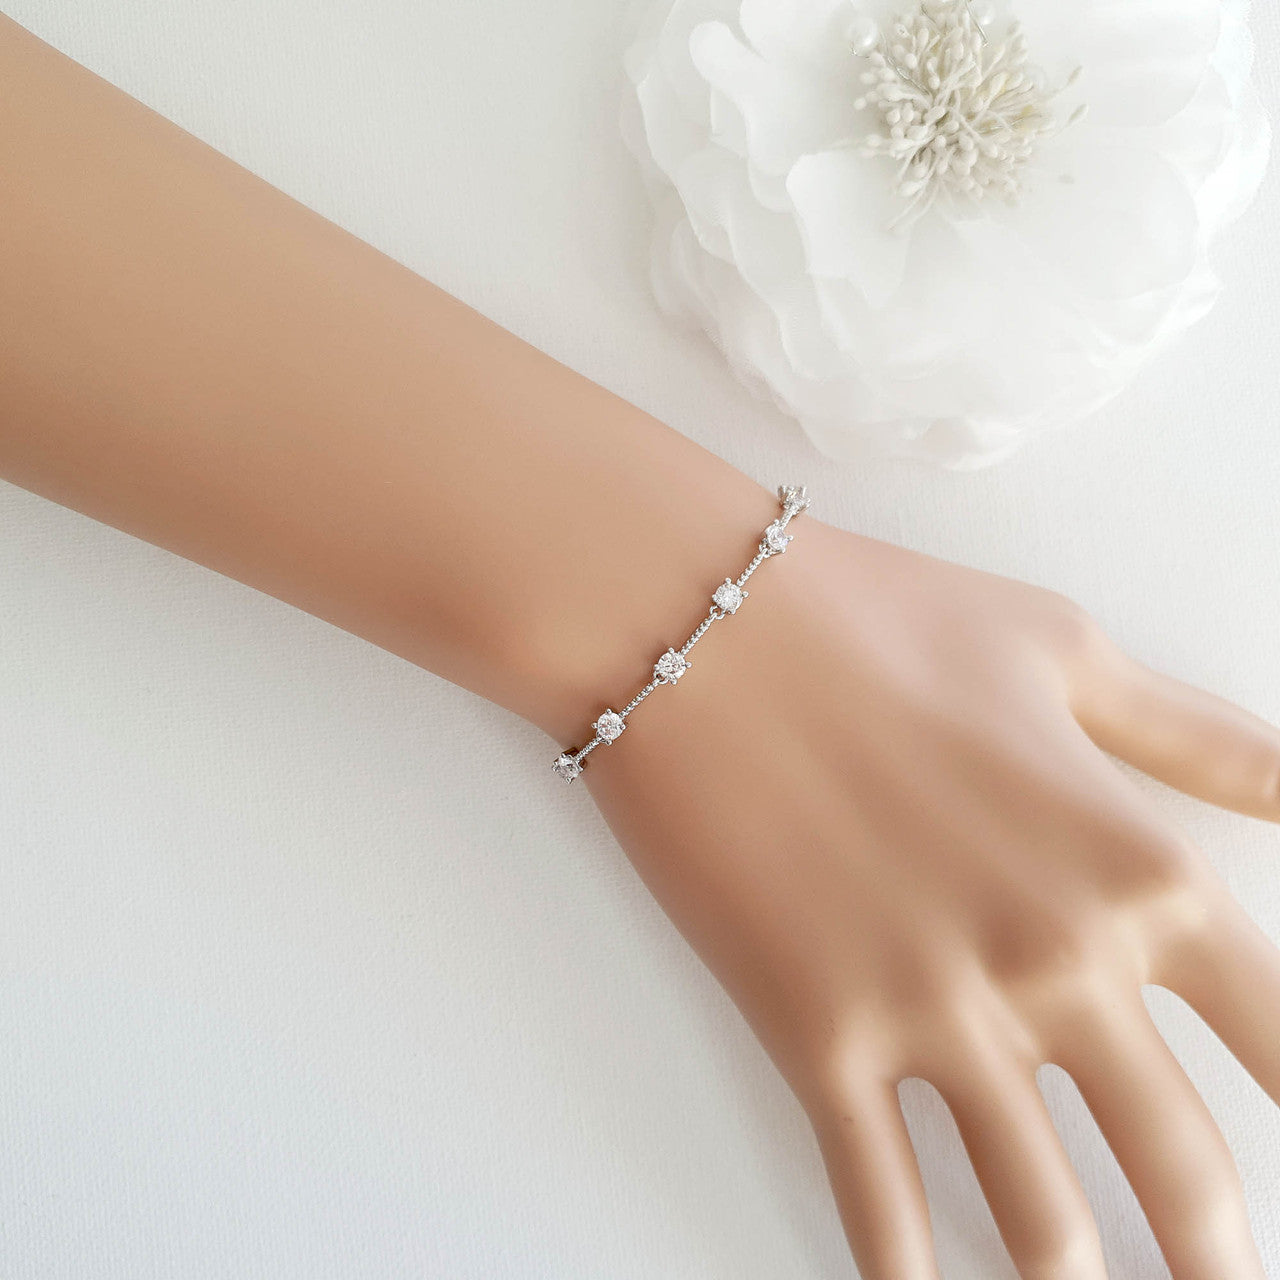 Minimalist Silver Bracelet for Brides-Ginger